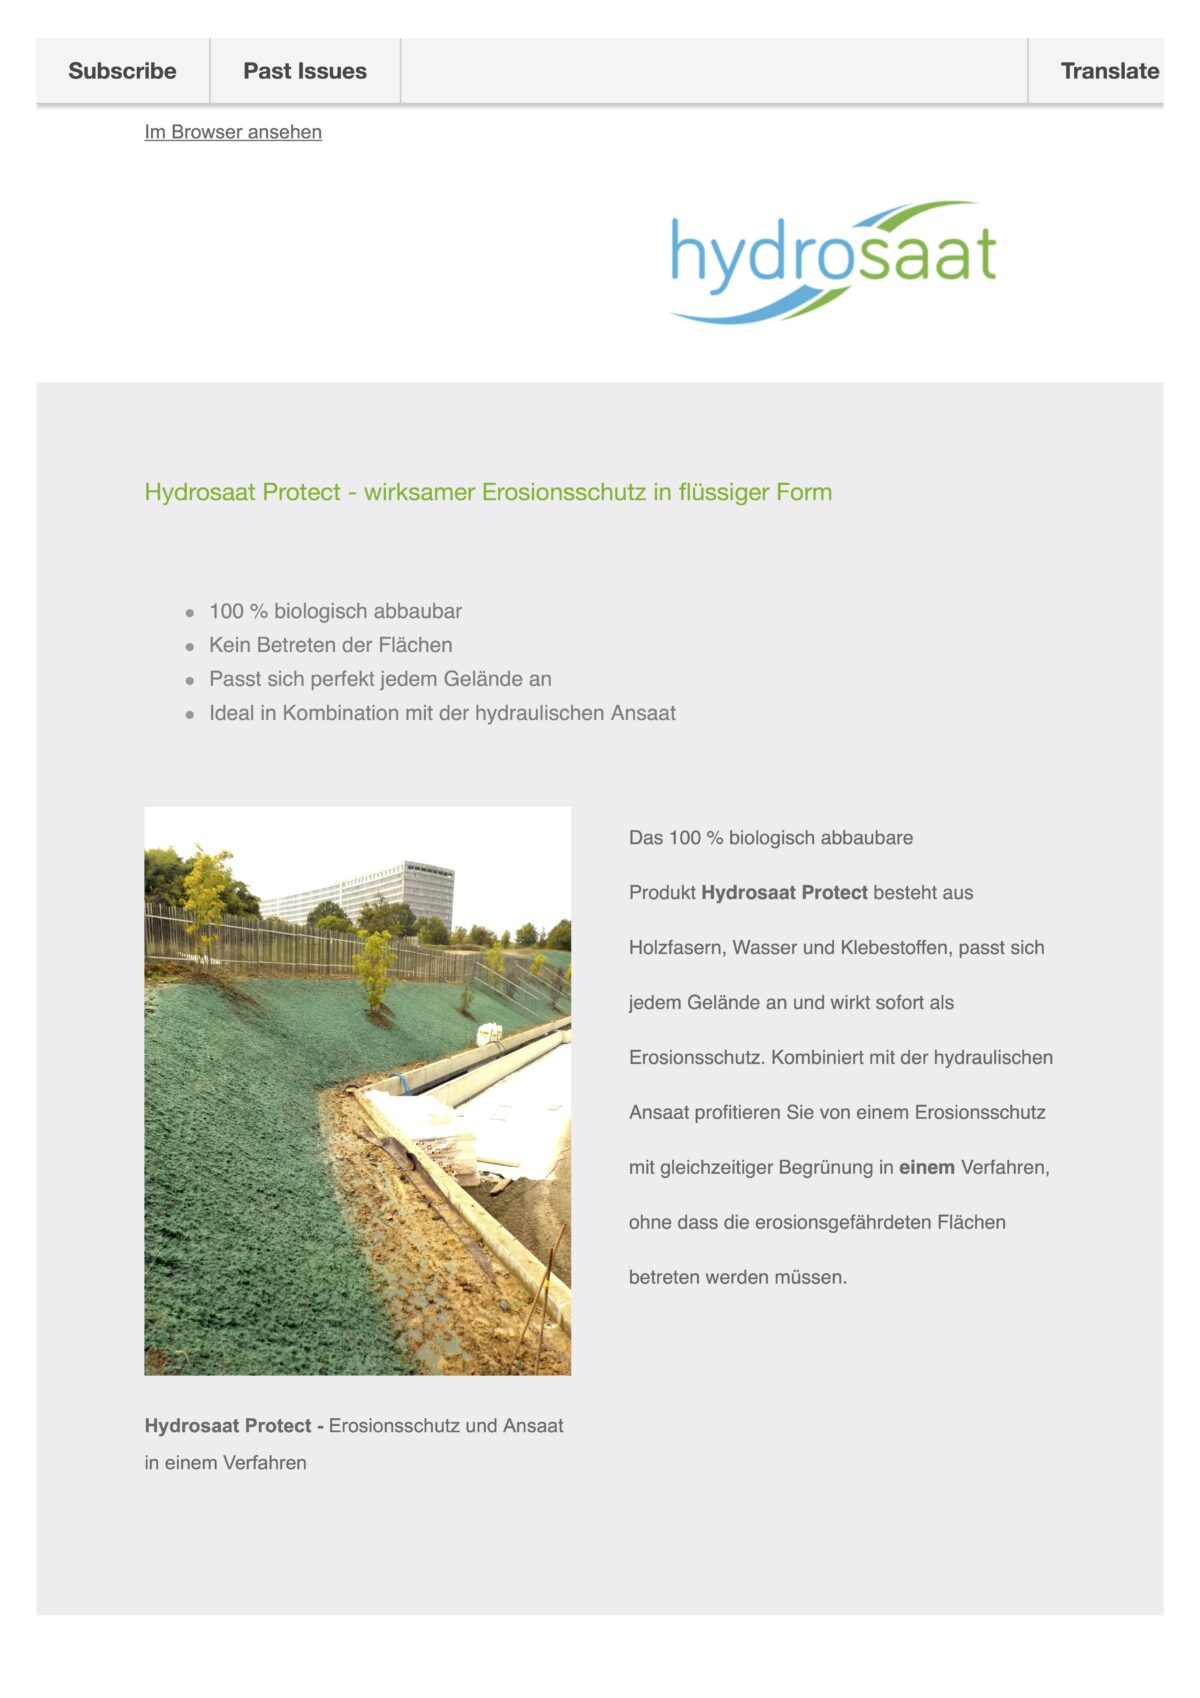 Hydrosaat Protect - der flüssige Erosionsschutz